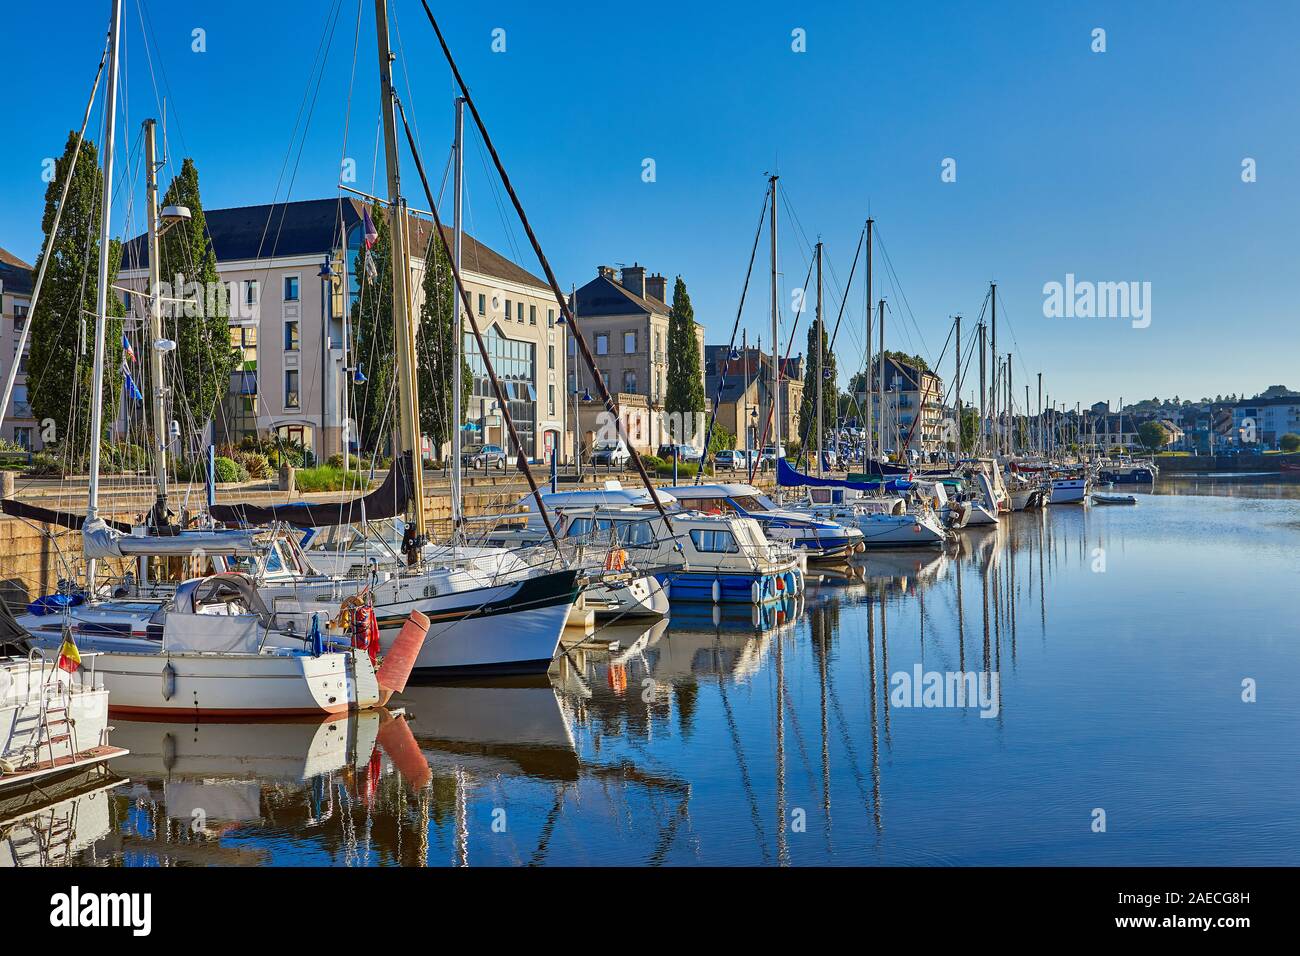 Bild von der Yachthafen von Redon, Bretagne, Frankreich Stockfoto